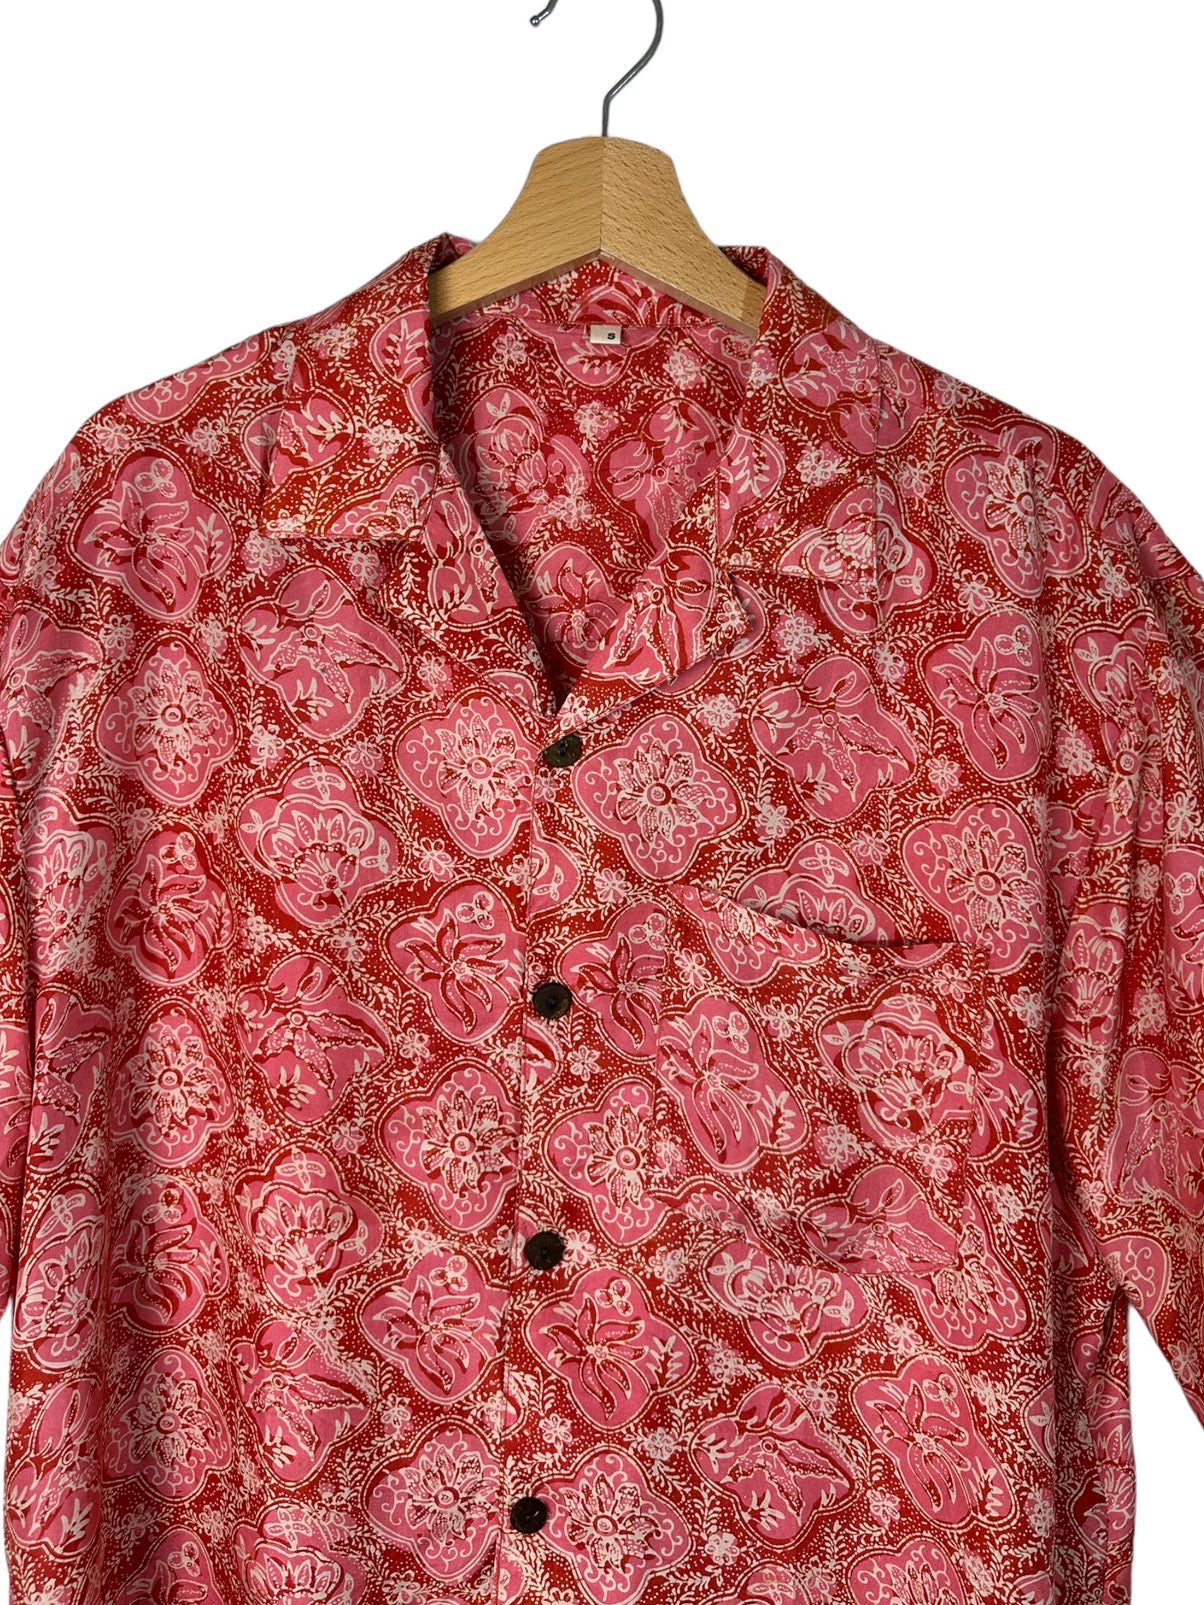 Camisa (s) de seda roja estampada vintage